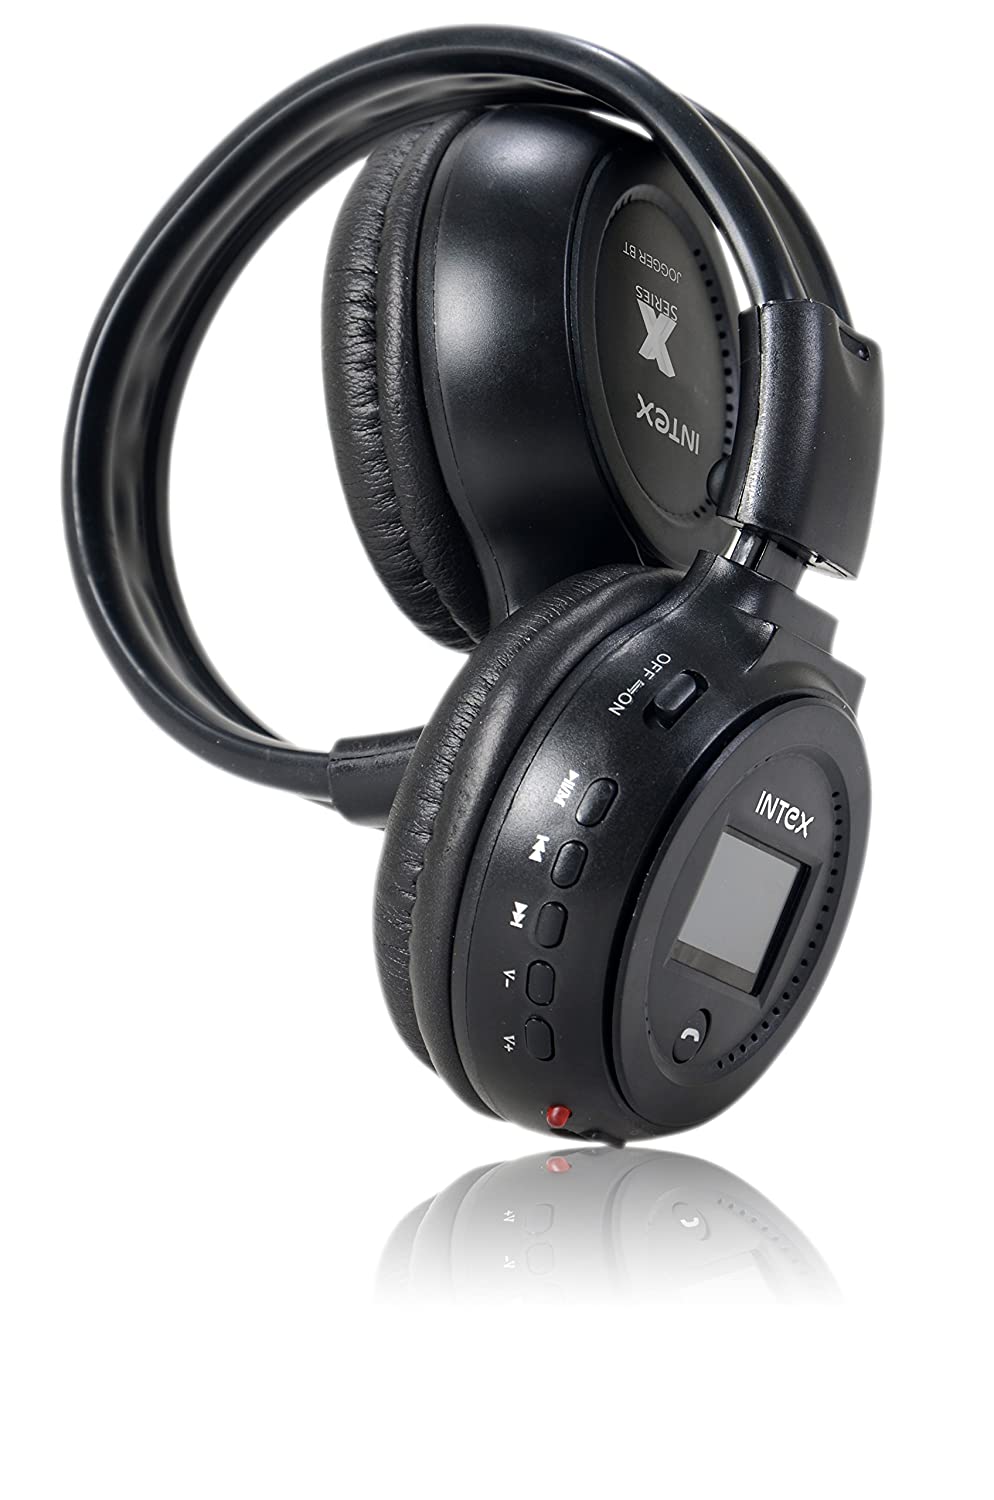 Intex Jogger B Multimedia Headphones